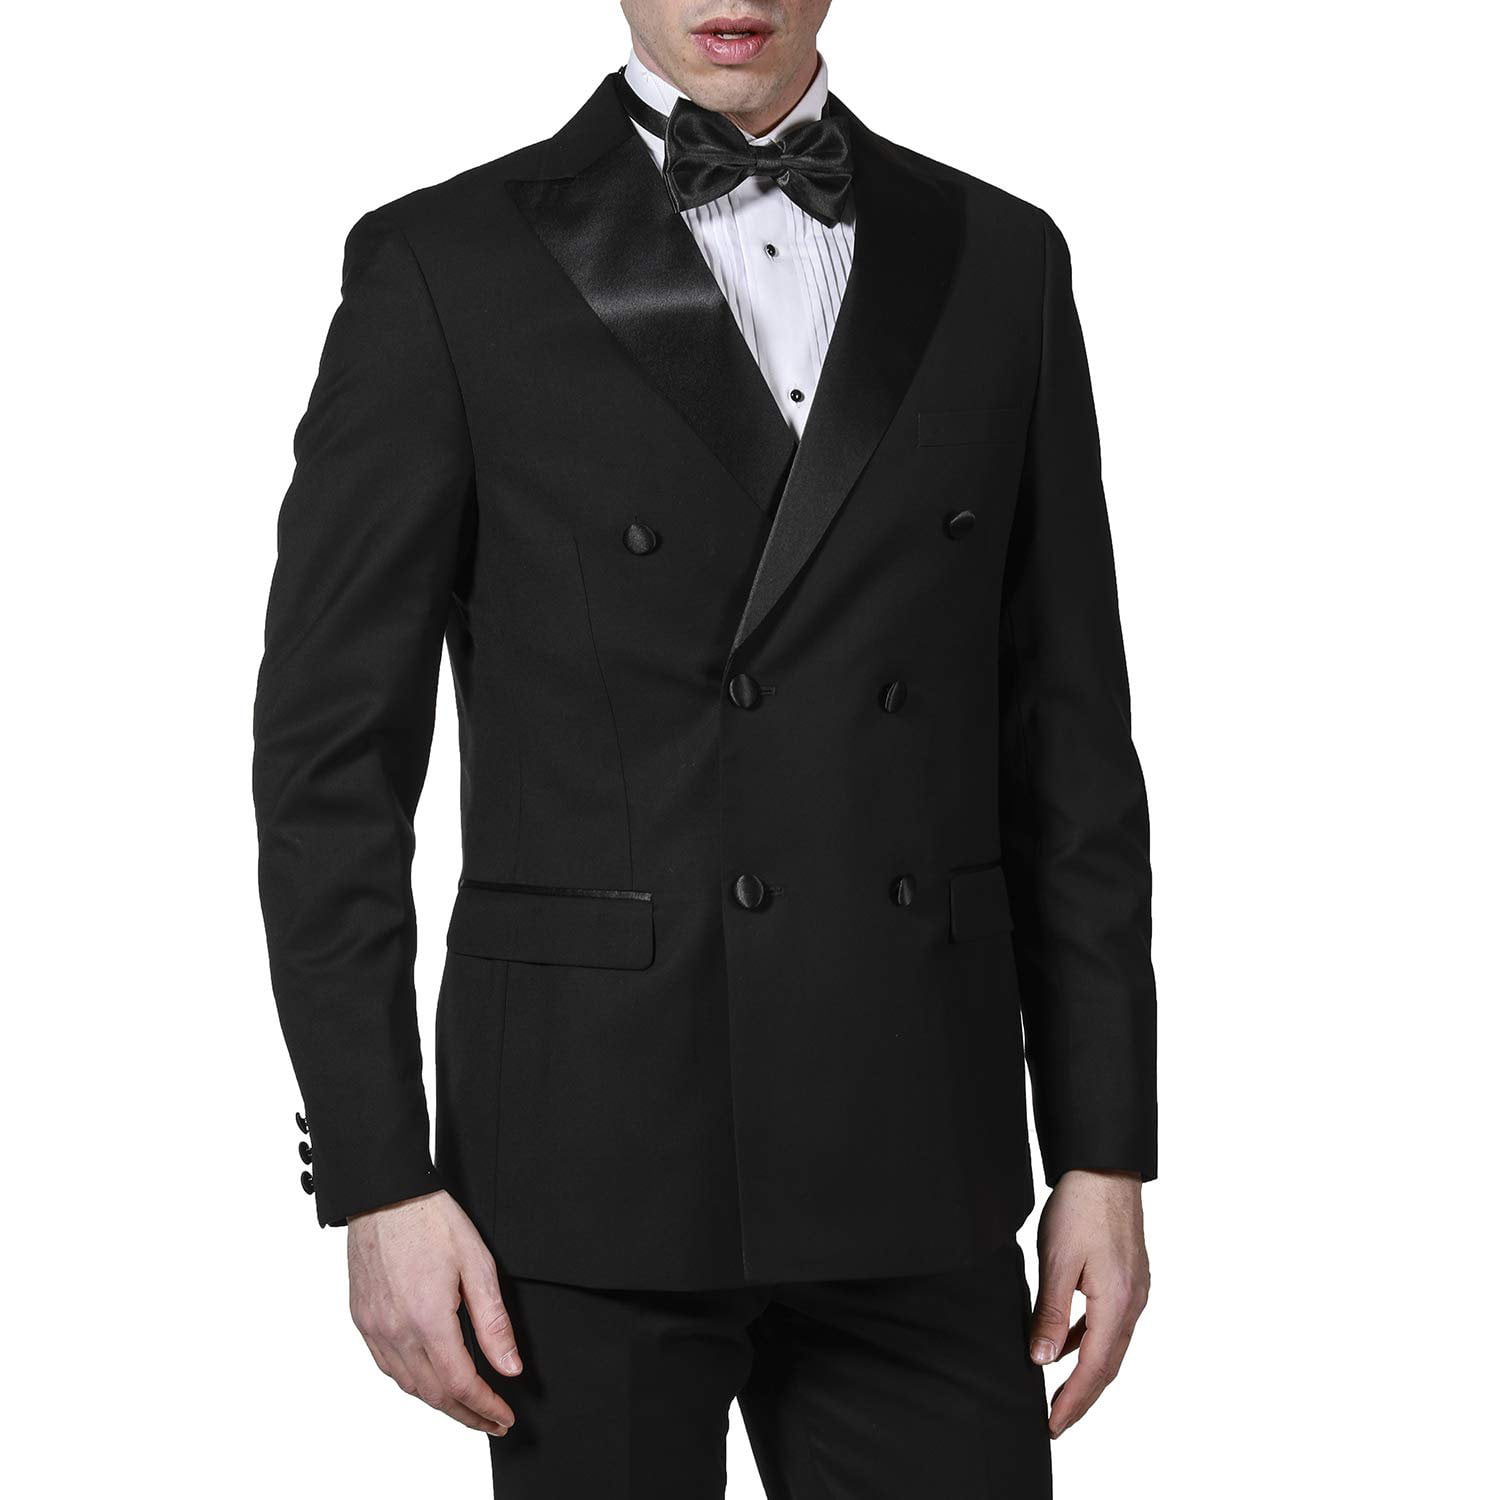 Adam Baker Mens Classic Fit Two-Button Peak & Notch Lapel Formal Tuxedo Suit Set 